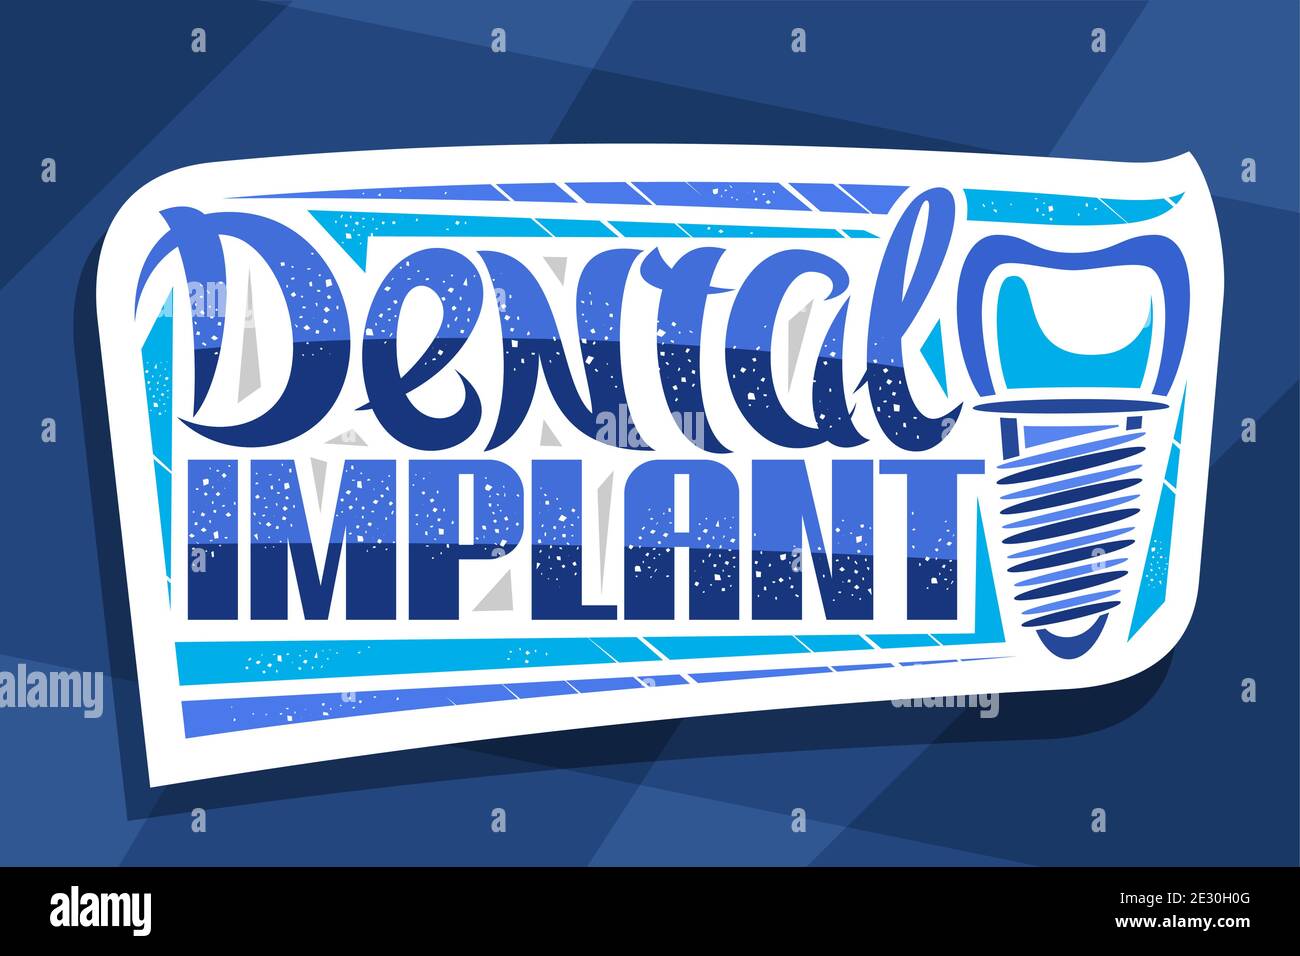 Logo Vector pour la clinique d'implant dentaire, badge en papier découpé décoratif avec illustration de la dent humaine avec vis, panneau d'affichage pour la cli professionnelle des prothèses dentaires Illustration de Vecteur